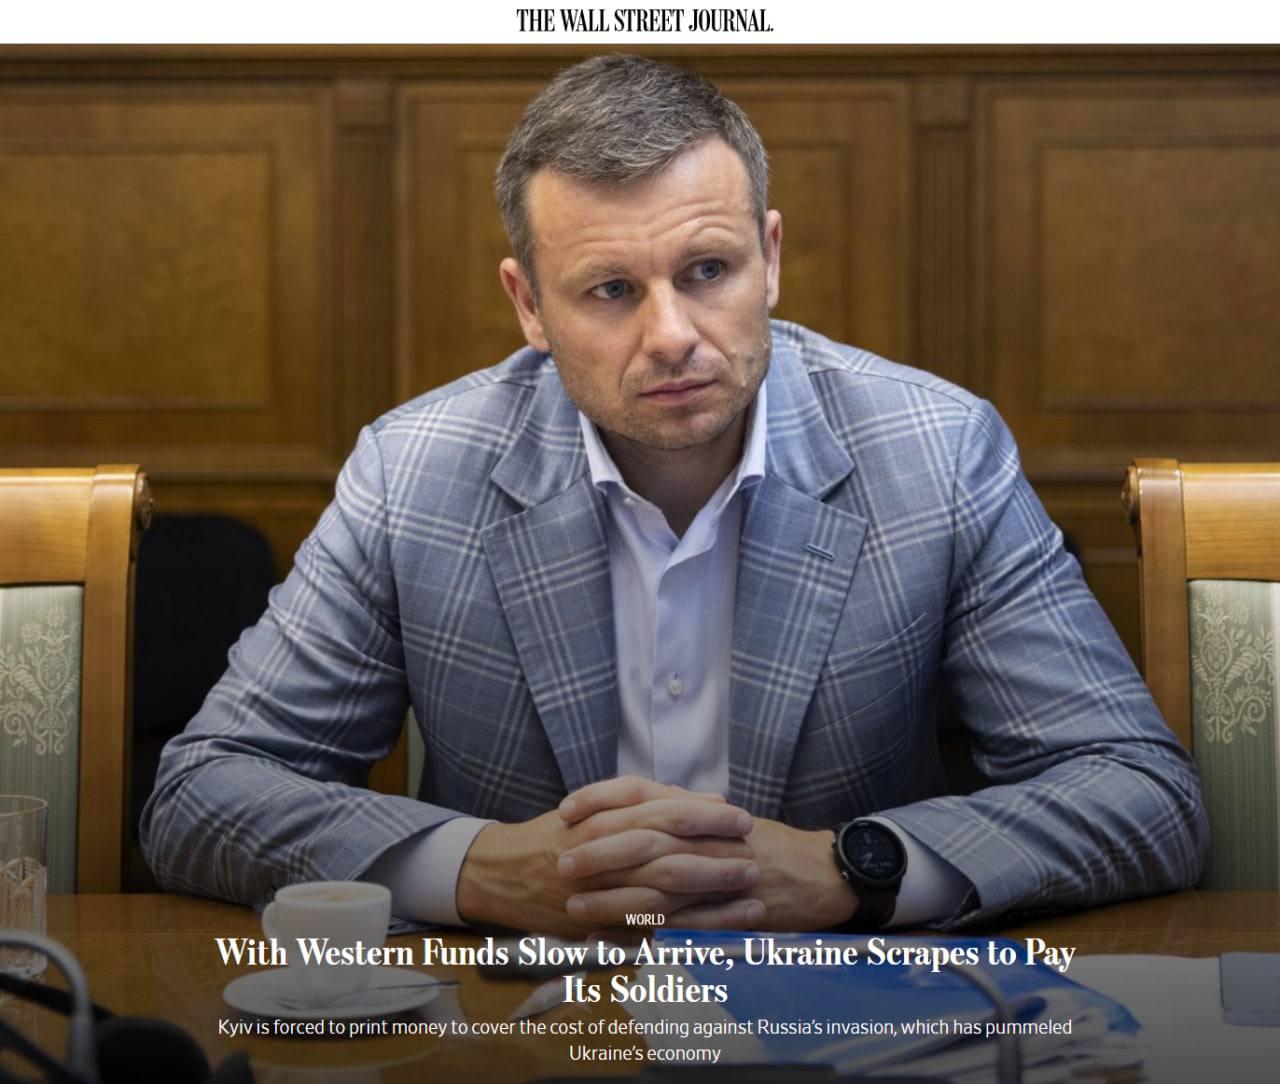 "Поскольку западные фонды поступают медленно, Украина с трудом платит своим солдатам", - с таким заголовком вышло интервью с министром финансов Сергеем Марченко в Wall Street Journal